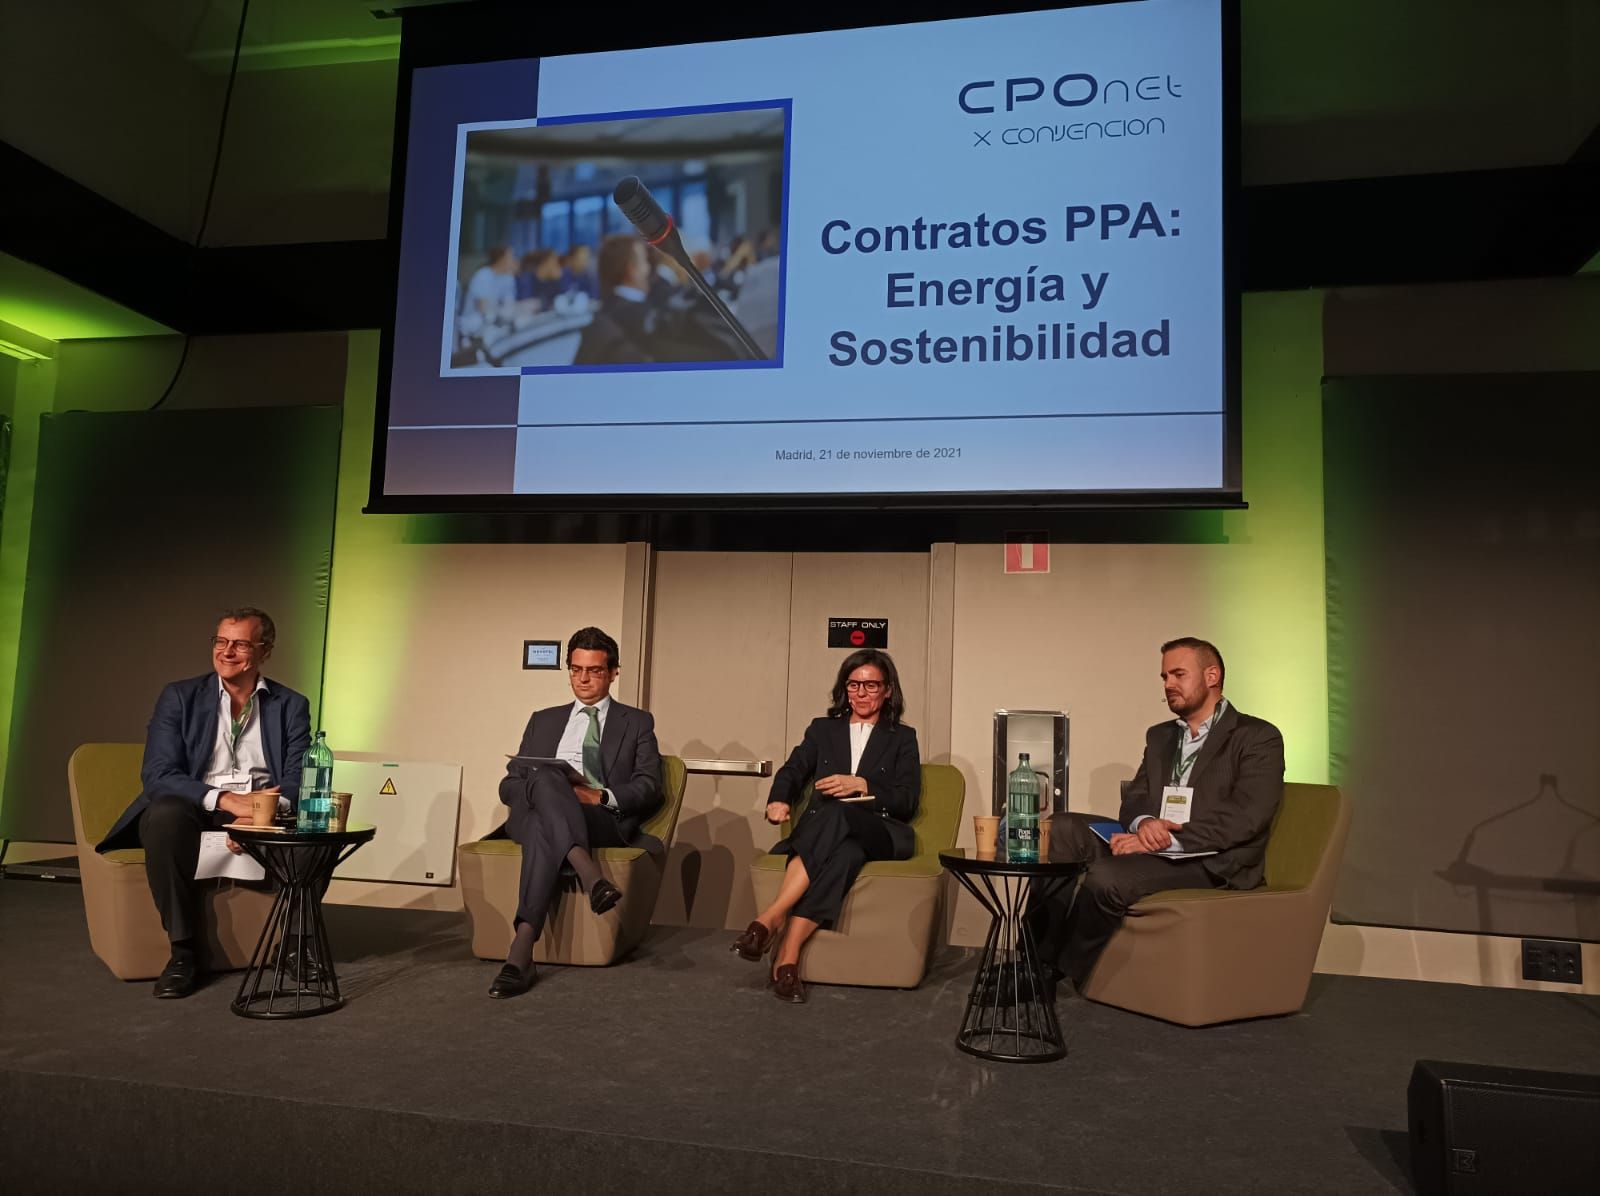 Contratos PPA: Energía y Sostenibilidad